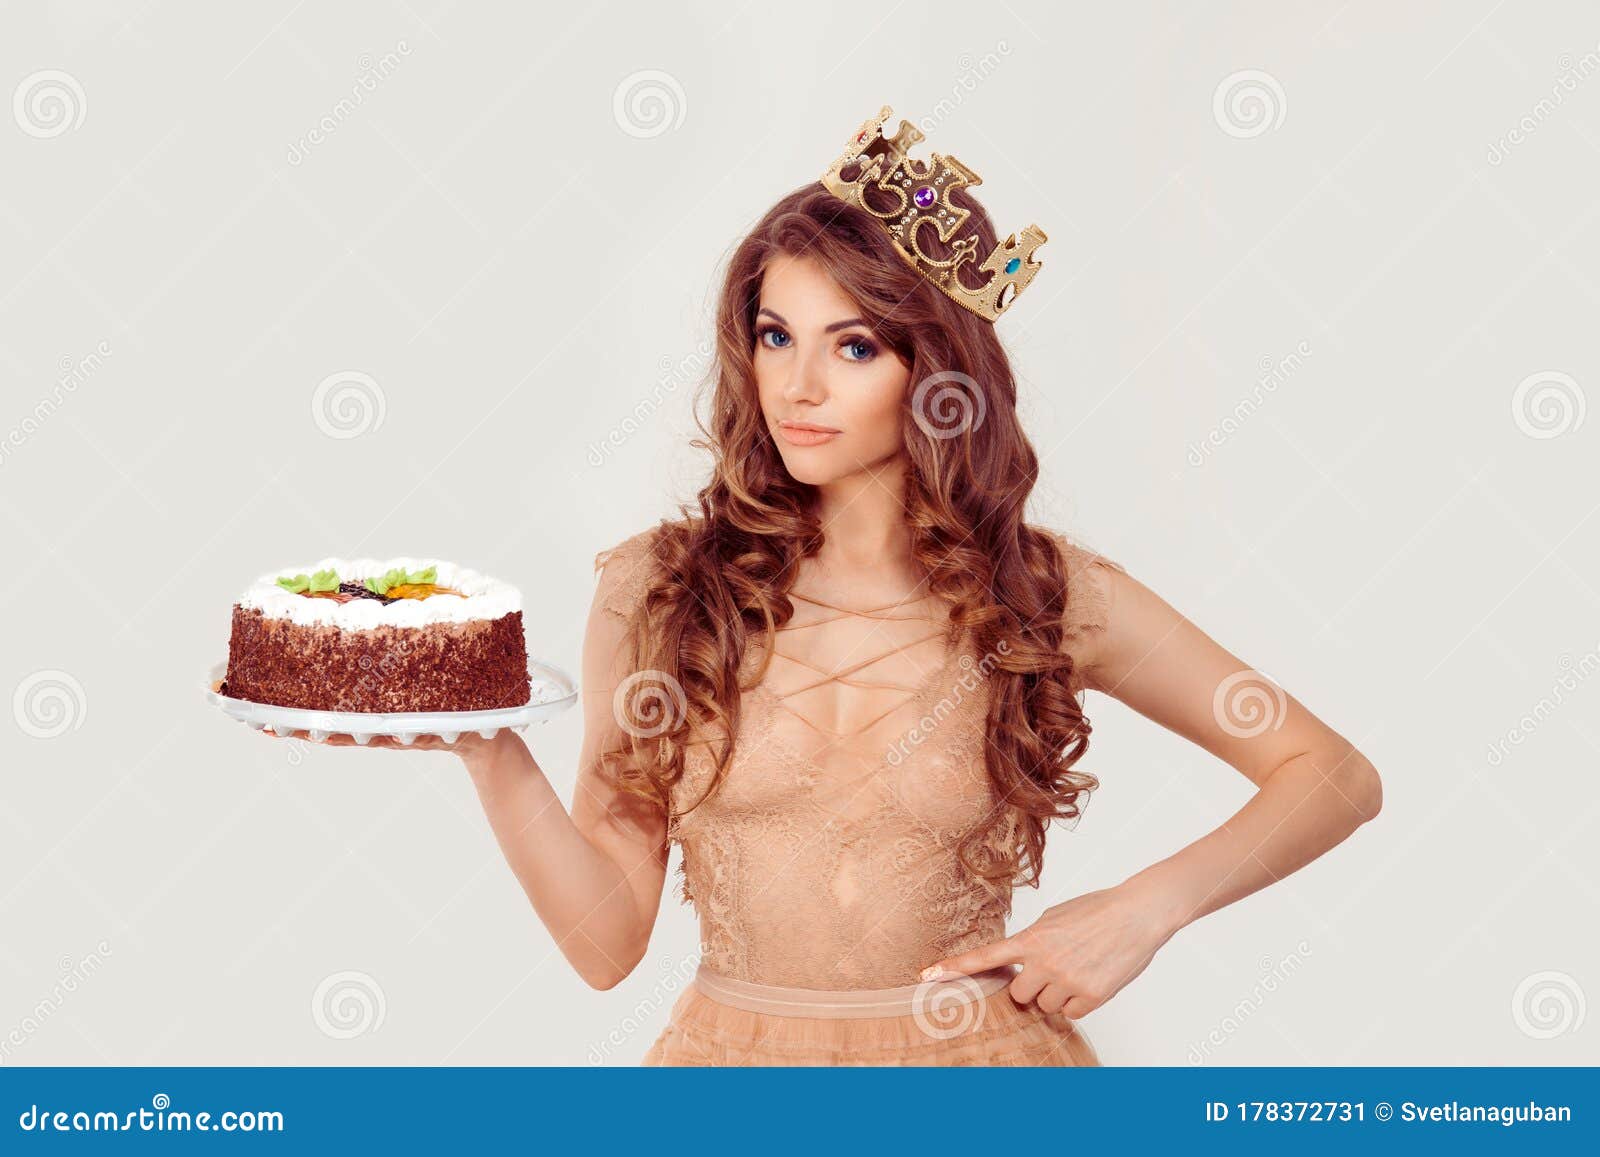 Cake nude photos